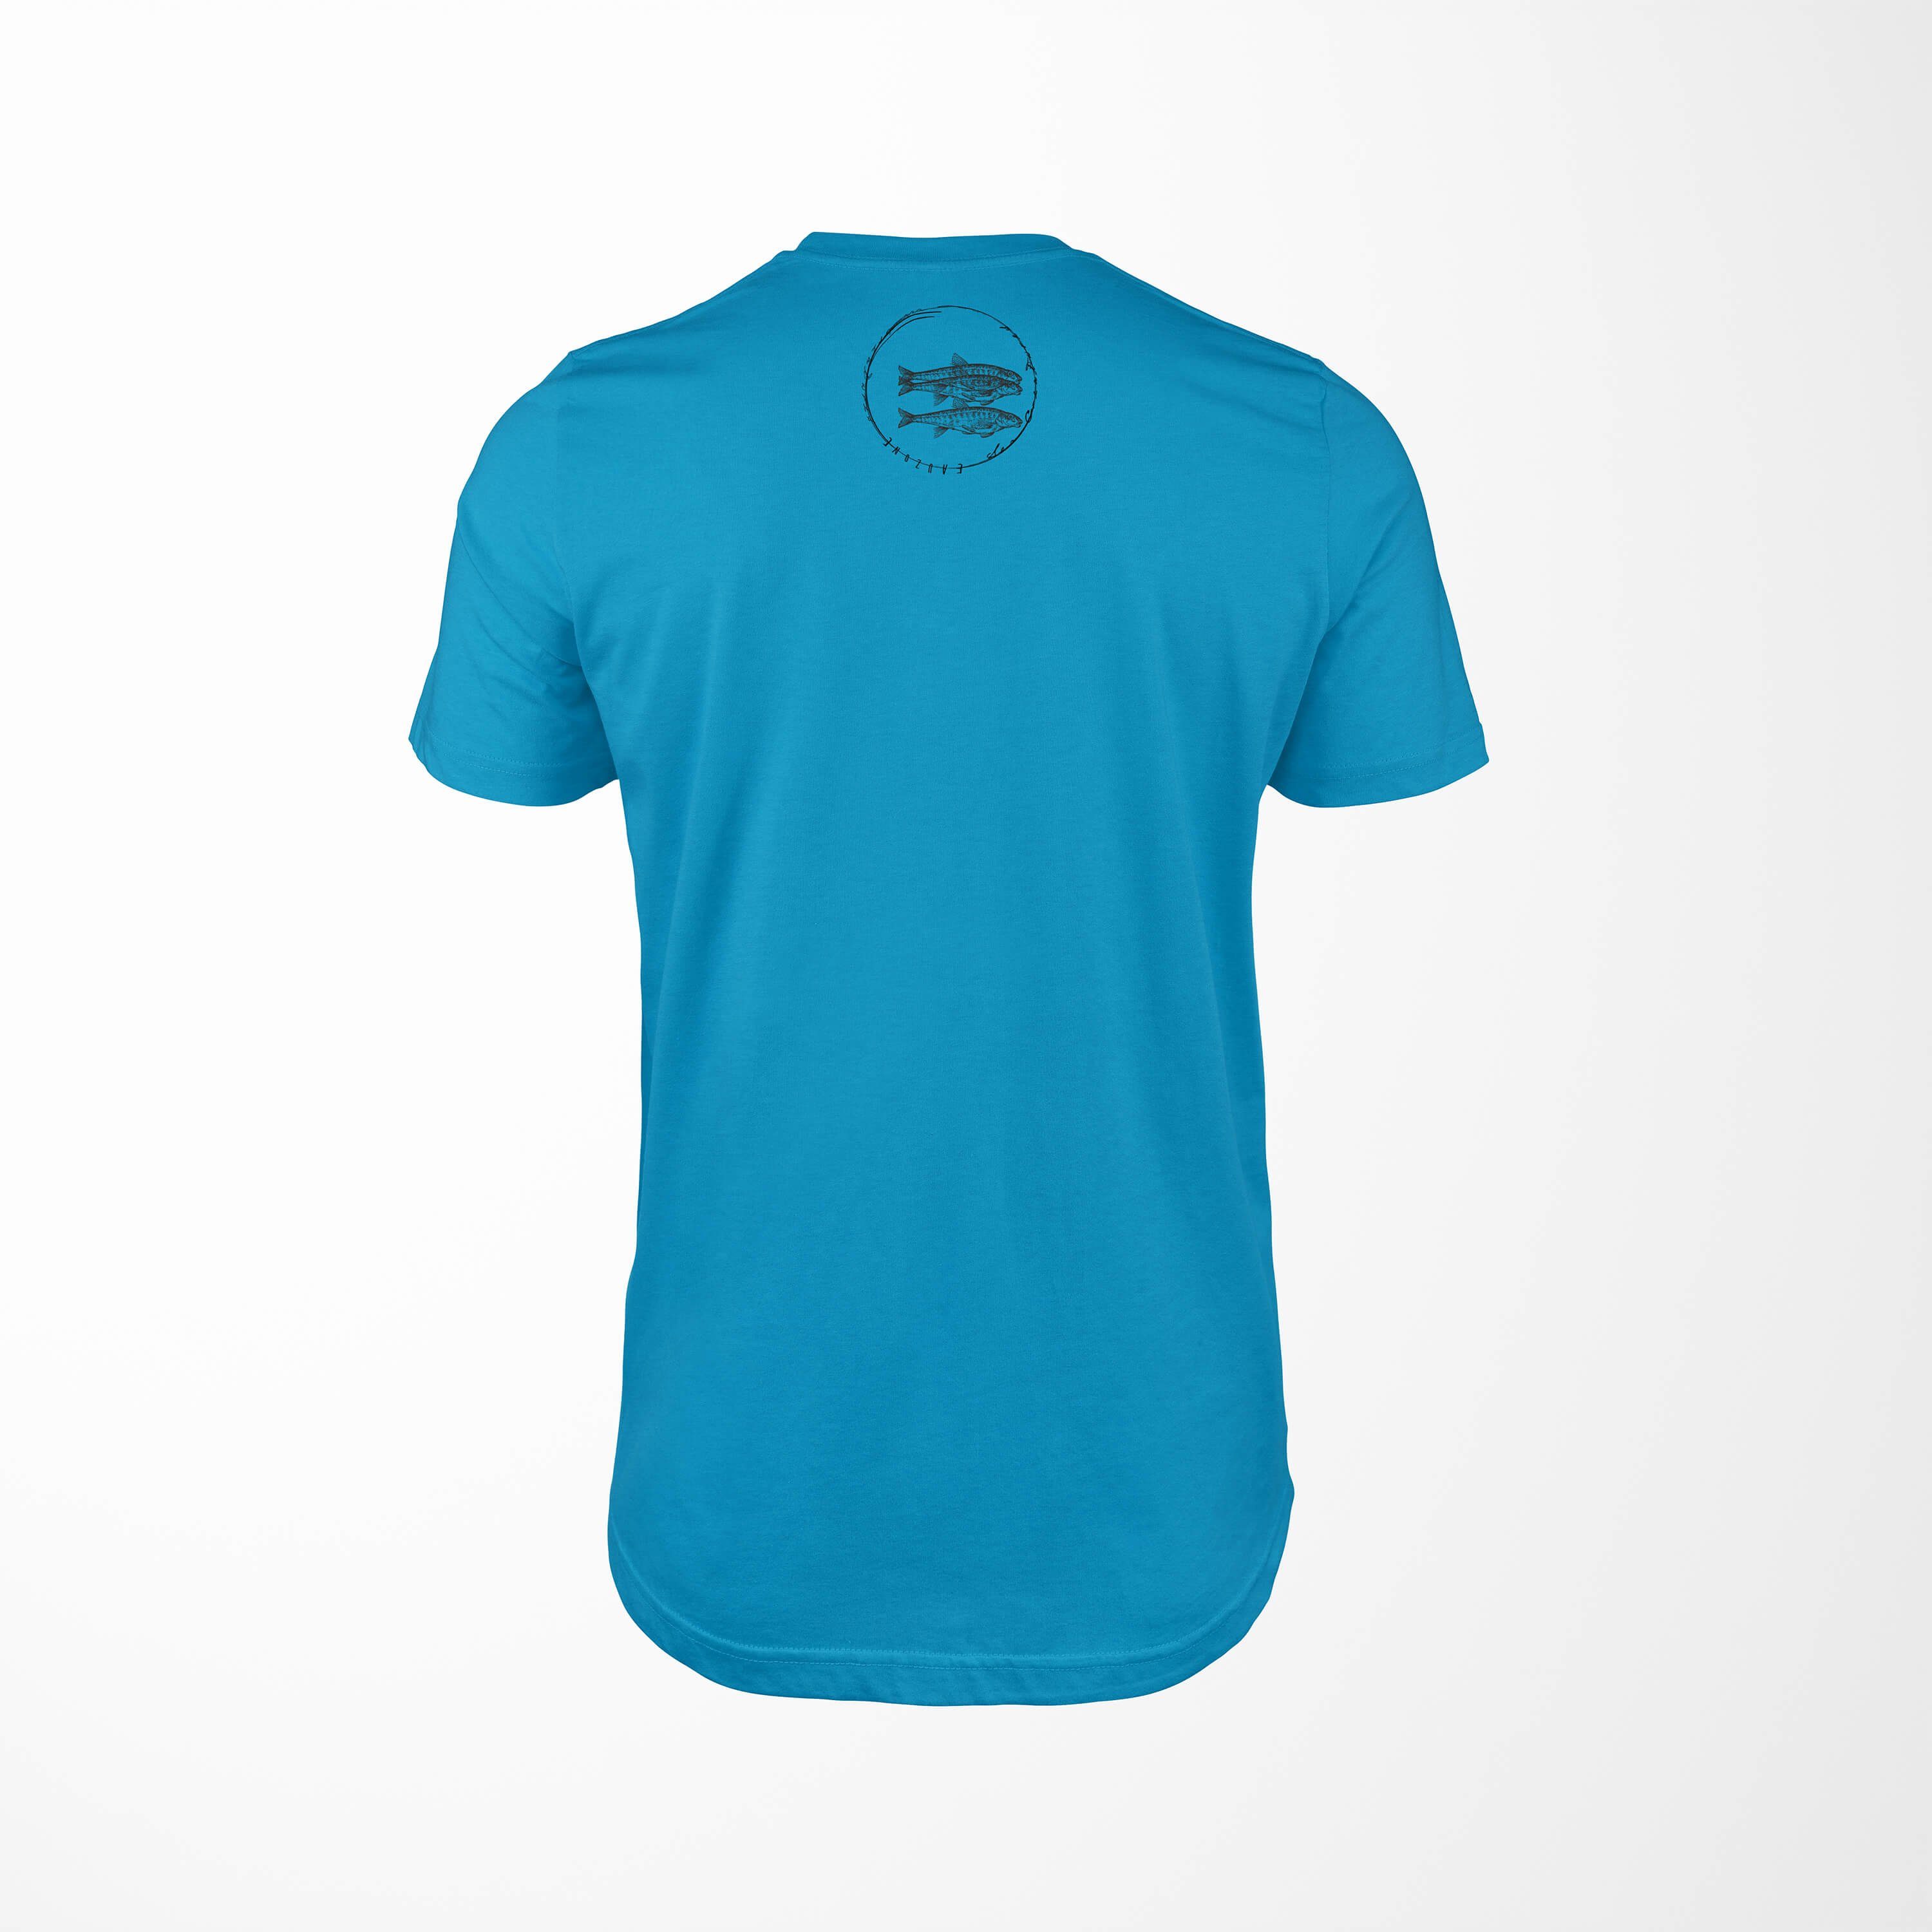 feine Sea Serie: T-Shirt Fische T-Shirt 059 Schnitt / Art Sea Sinus Atoll Struktur Tiefsee - sportlicher und Creatures,